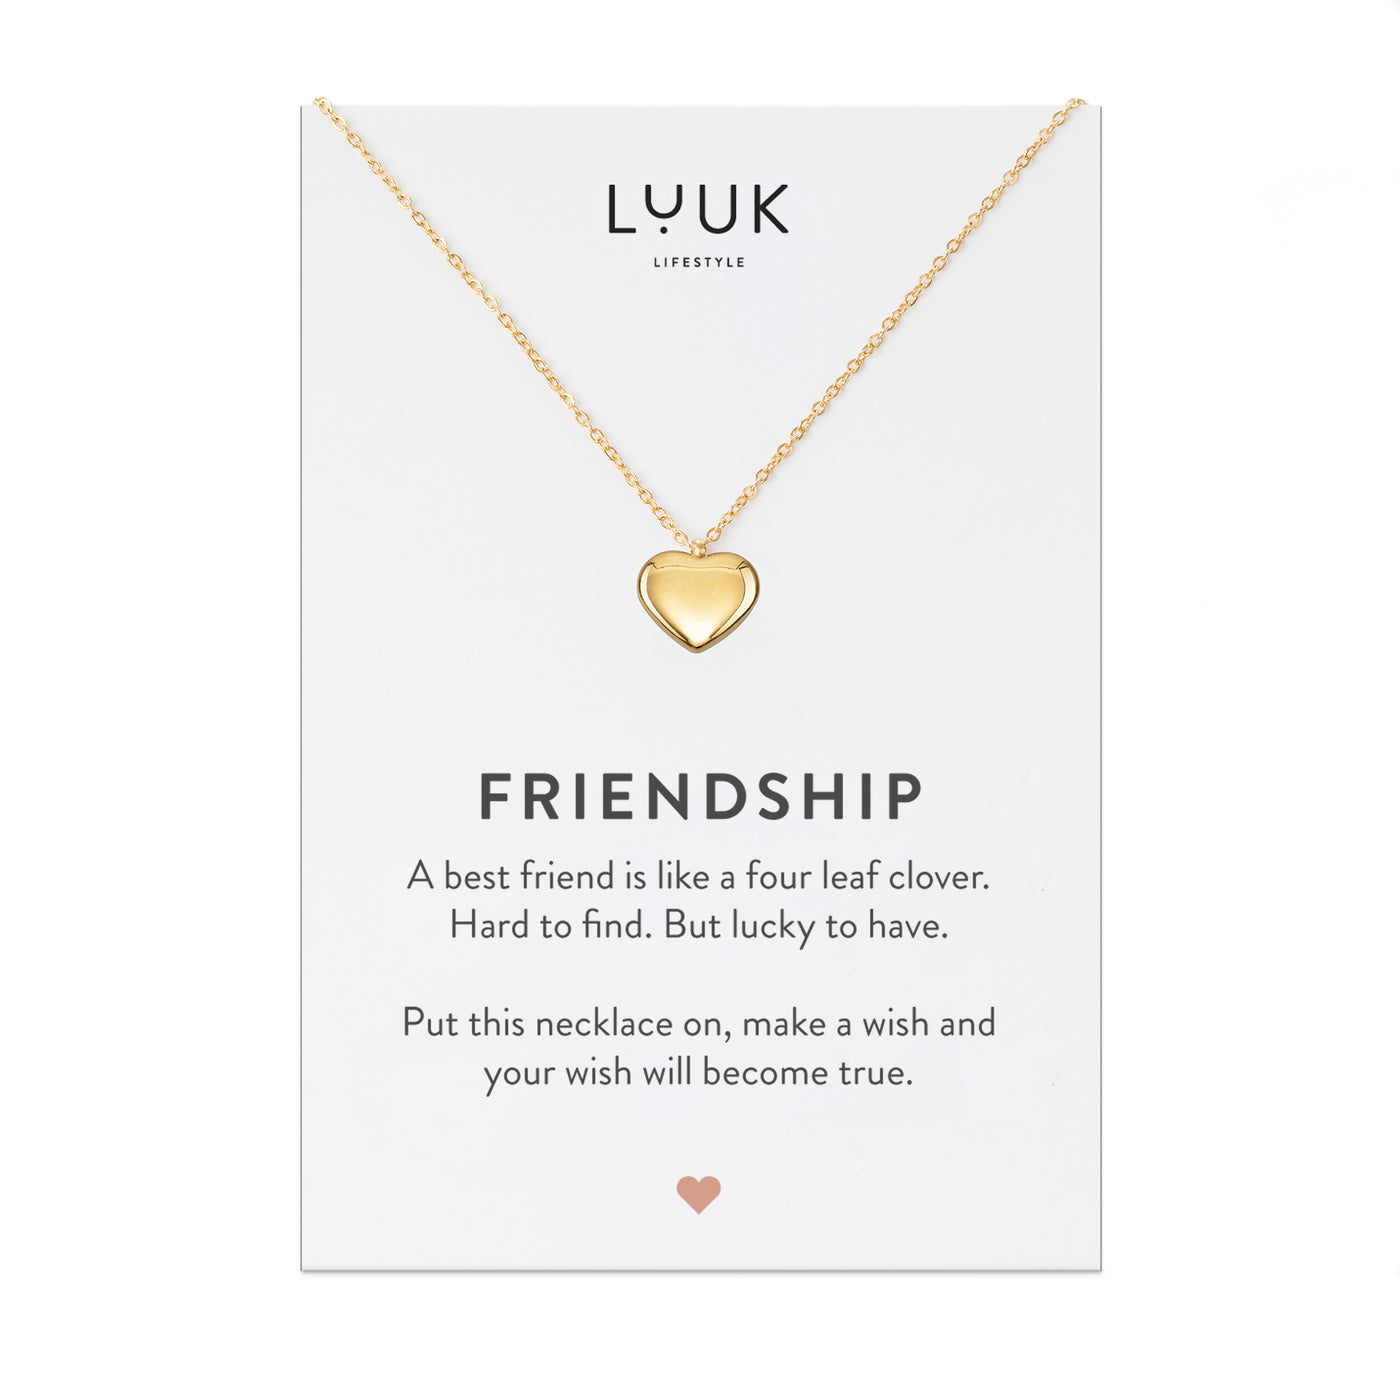 Gold Kette mit Herz Anhänger aus Edelstahl auf Friendship Spruchkarte von der Brand Luuk Lifestyle 